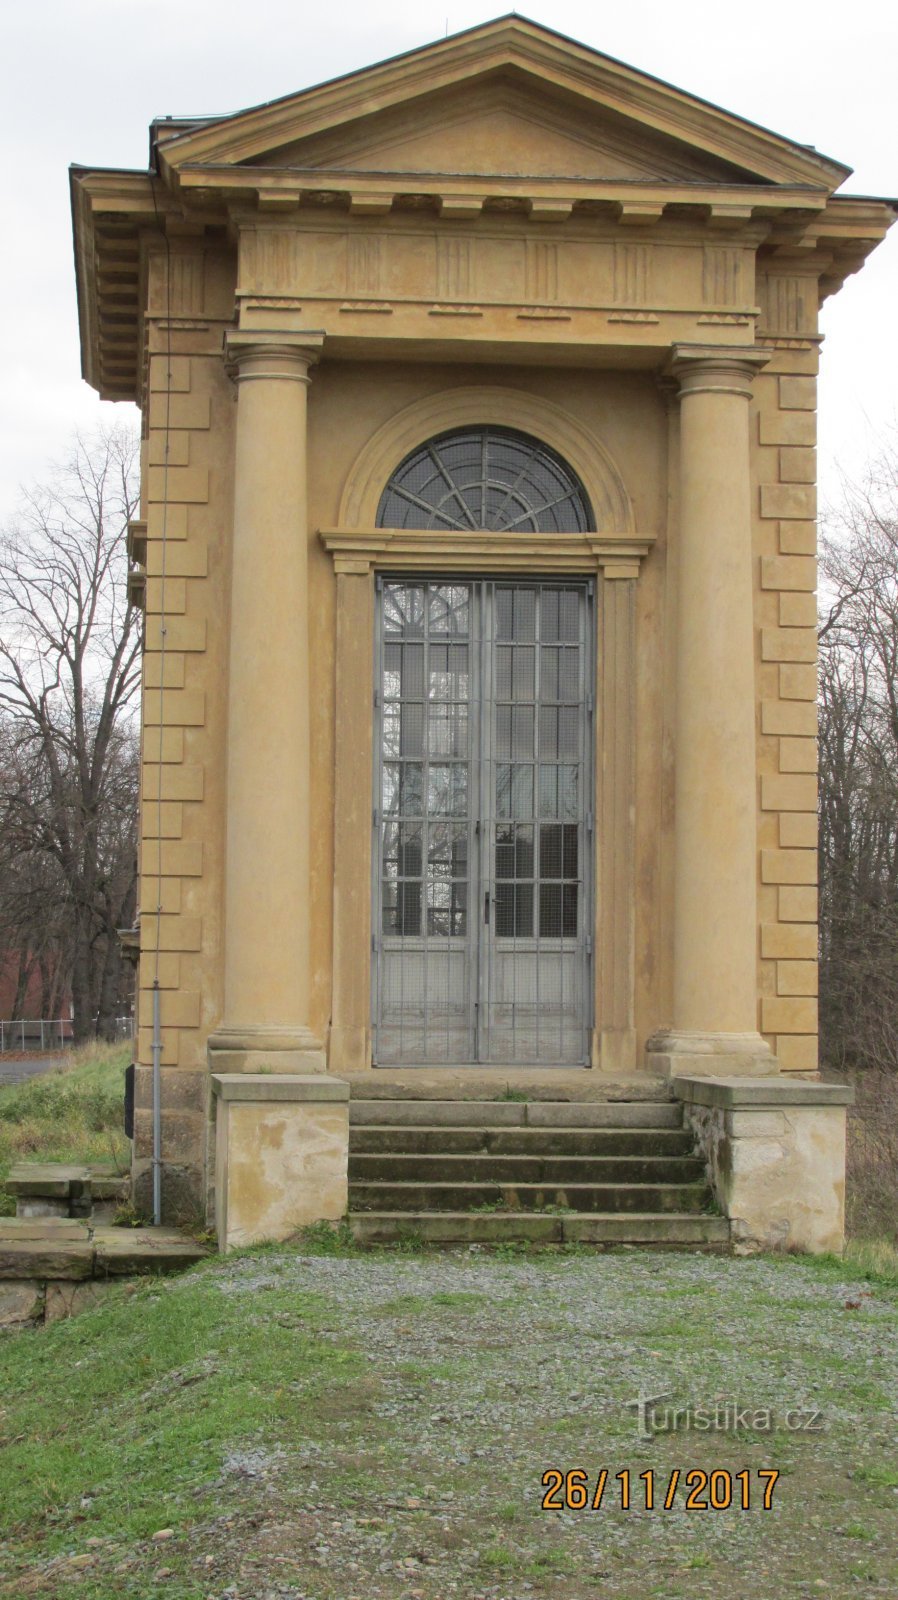 Laudon's pavilion at the Veltrusy castle